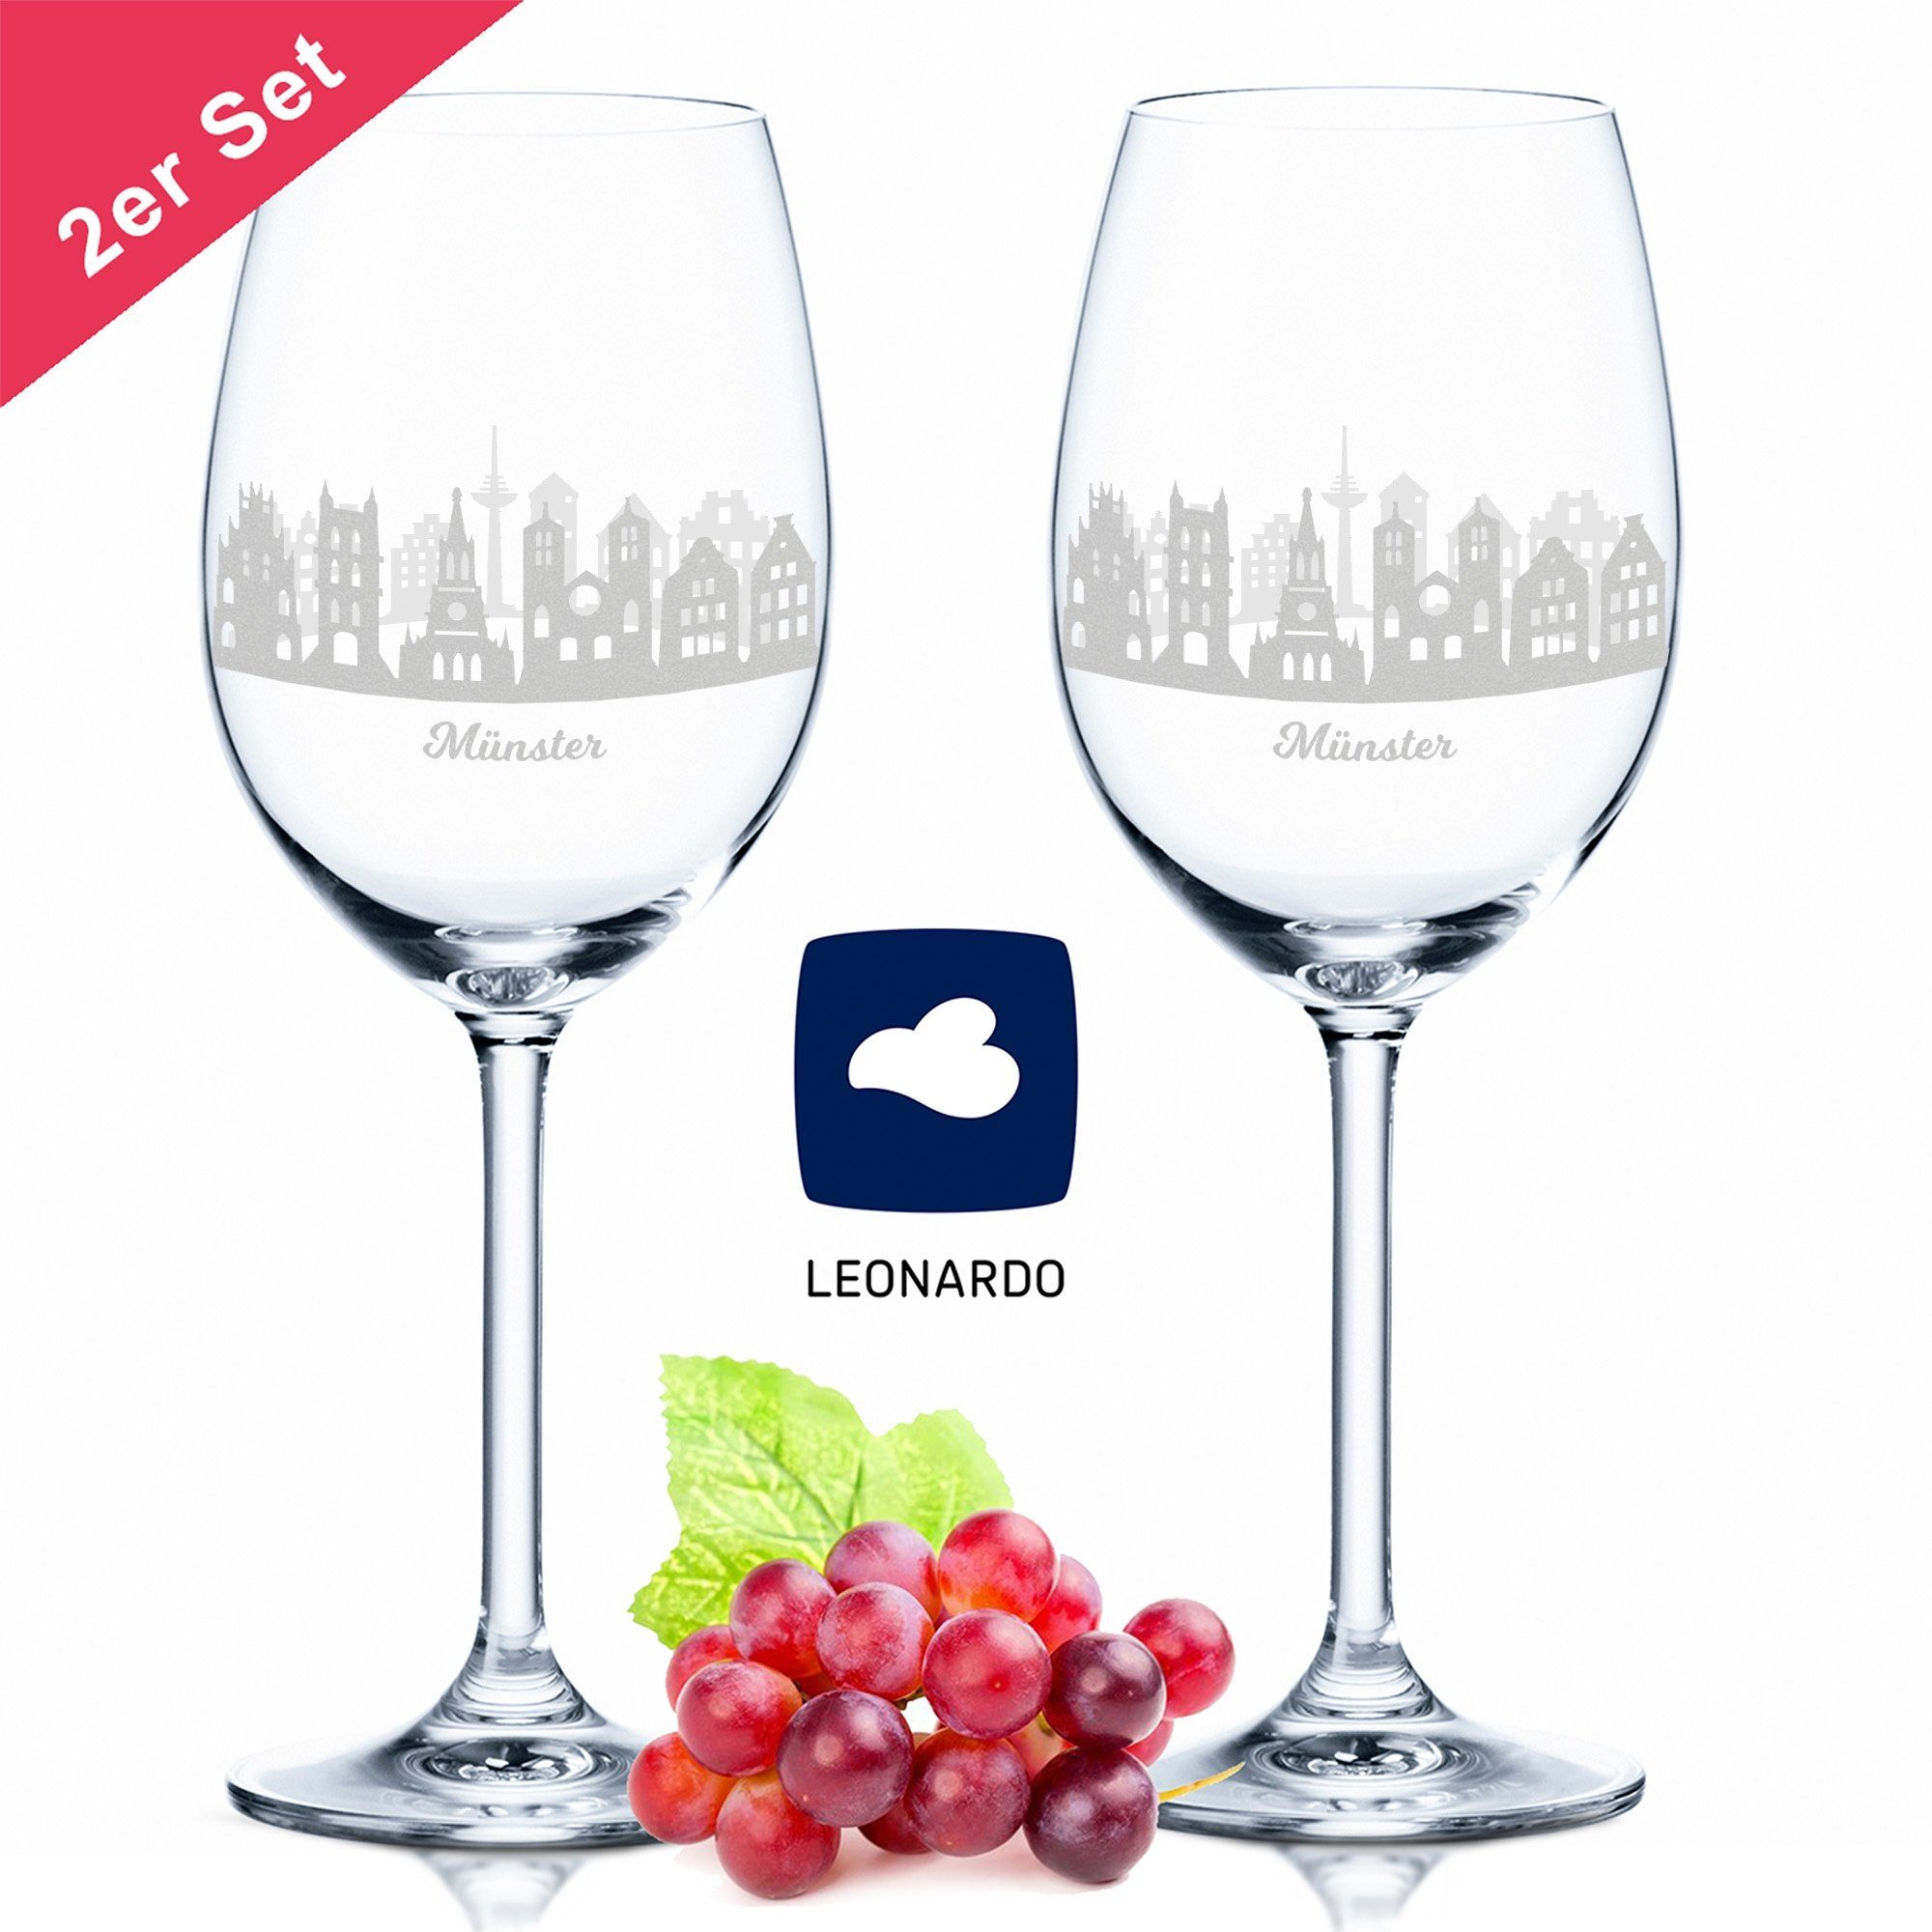 GRAVURZEILE Rotweinglas Leonardo Weinglas mit Gravur - Münster Geschenk im  2er Set - Weingeschenk - Souvenir Andenken & Mitbringsel -  Geburtstagsgeschenk für Sie & Ihn, Glas